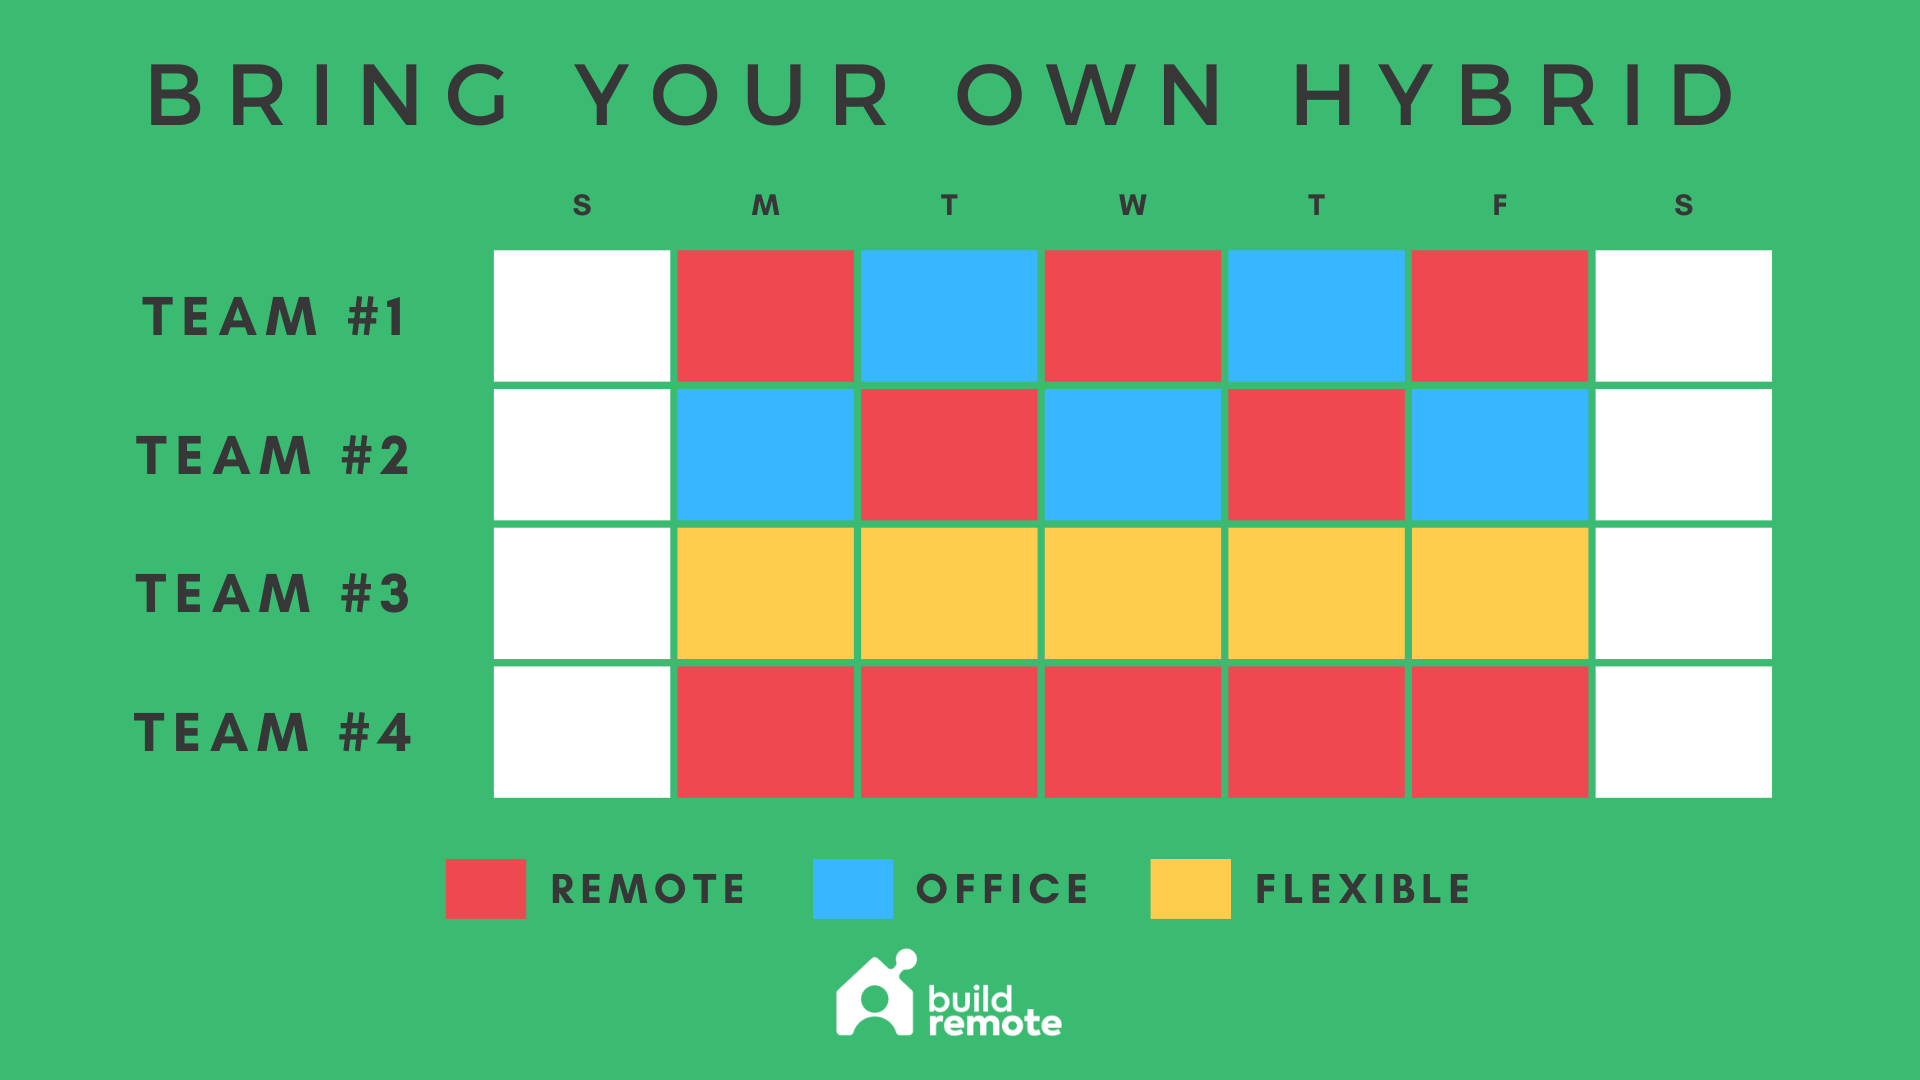 bring your own hybrid work schedule